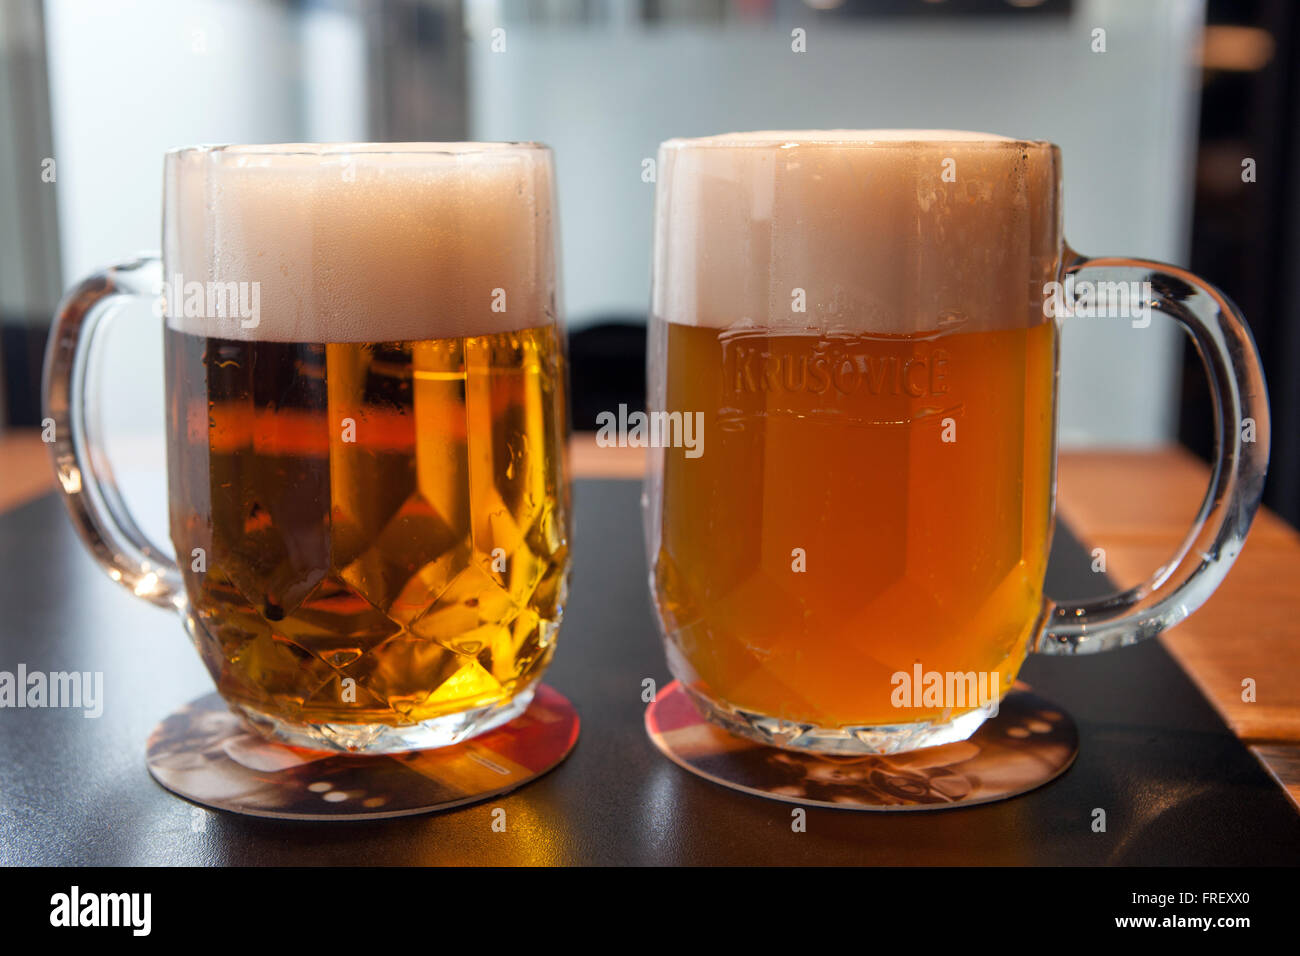 La birra ceca vetro, due pinte di birra con diversi tipi di birra chiara Krusovice, tipicamente lager e birra di frumento, Praga, Repubblica Ceca Foto Stock